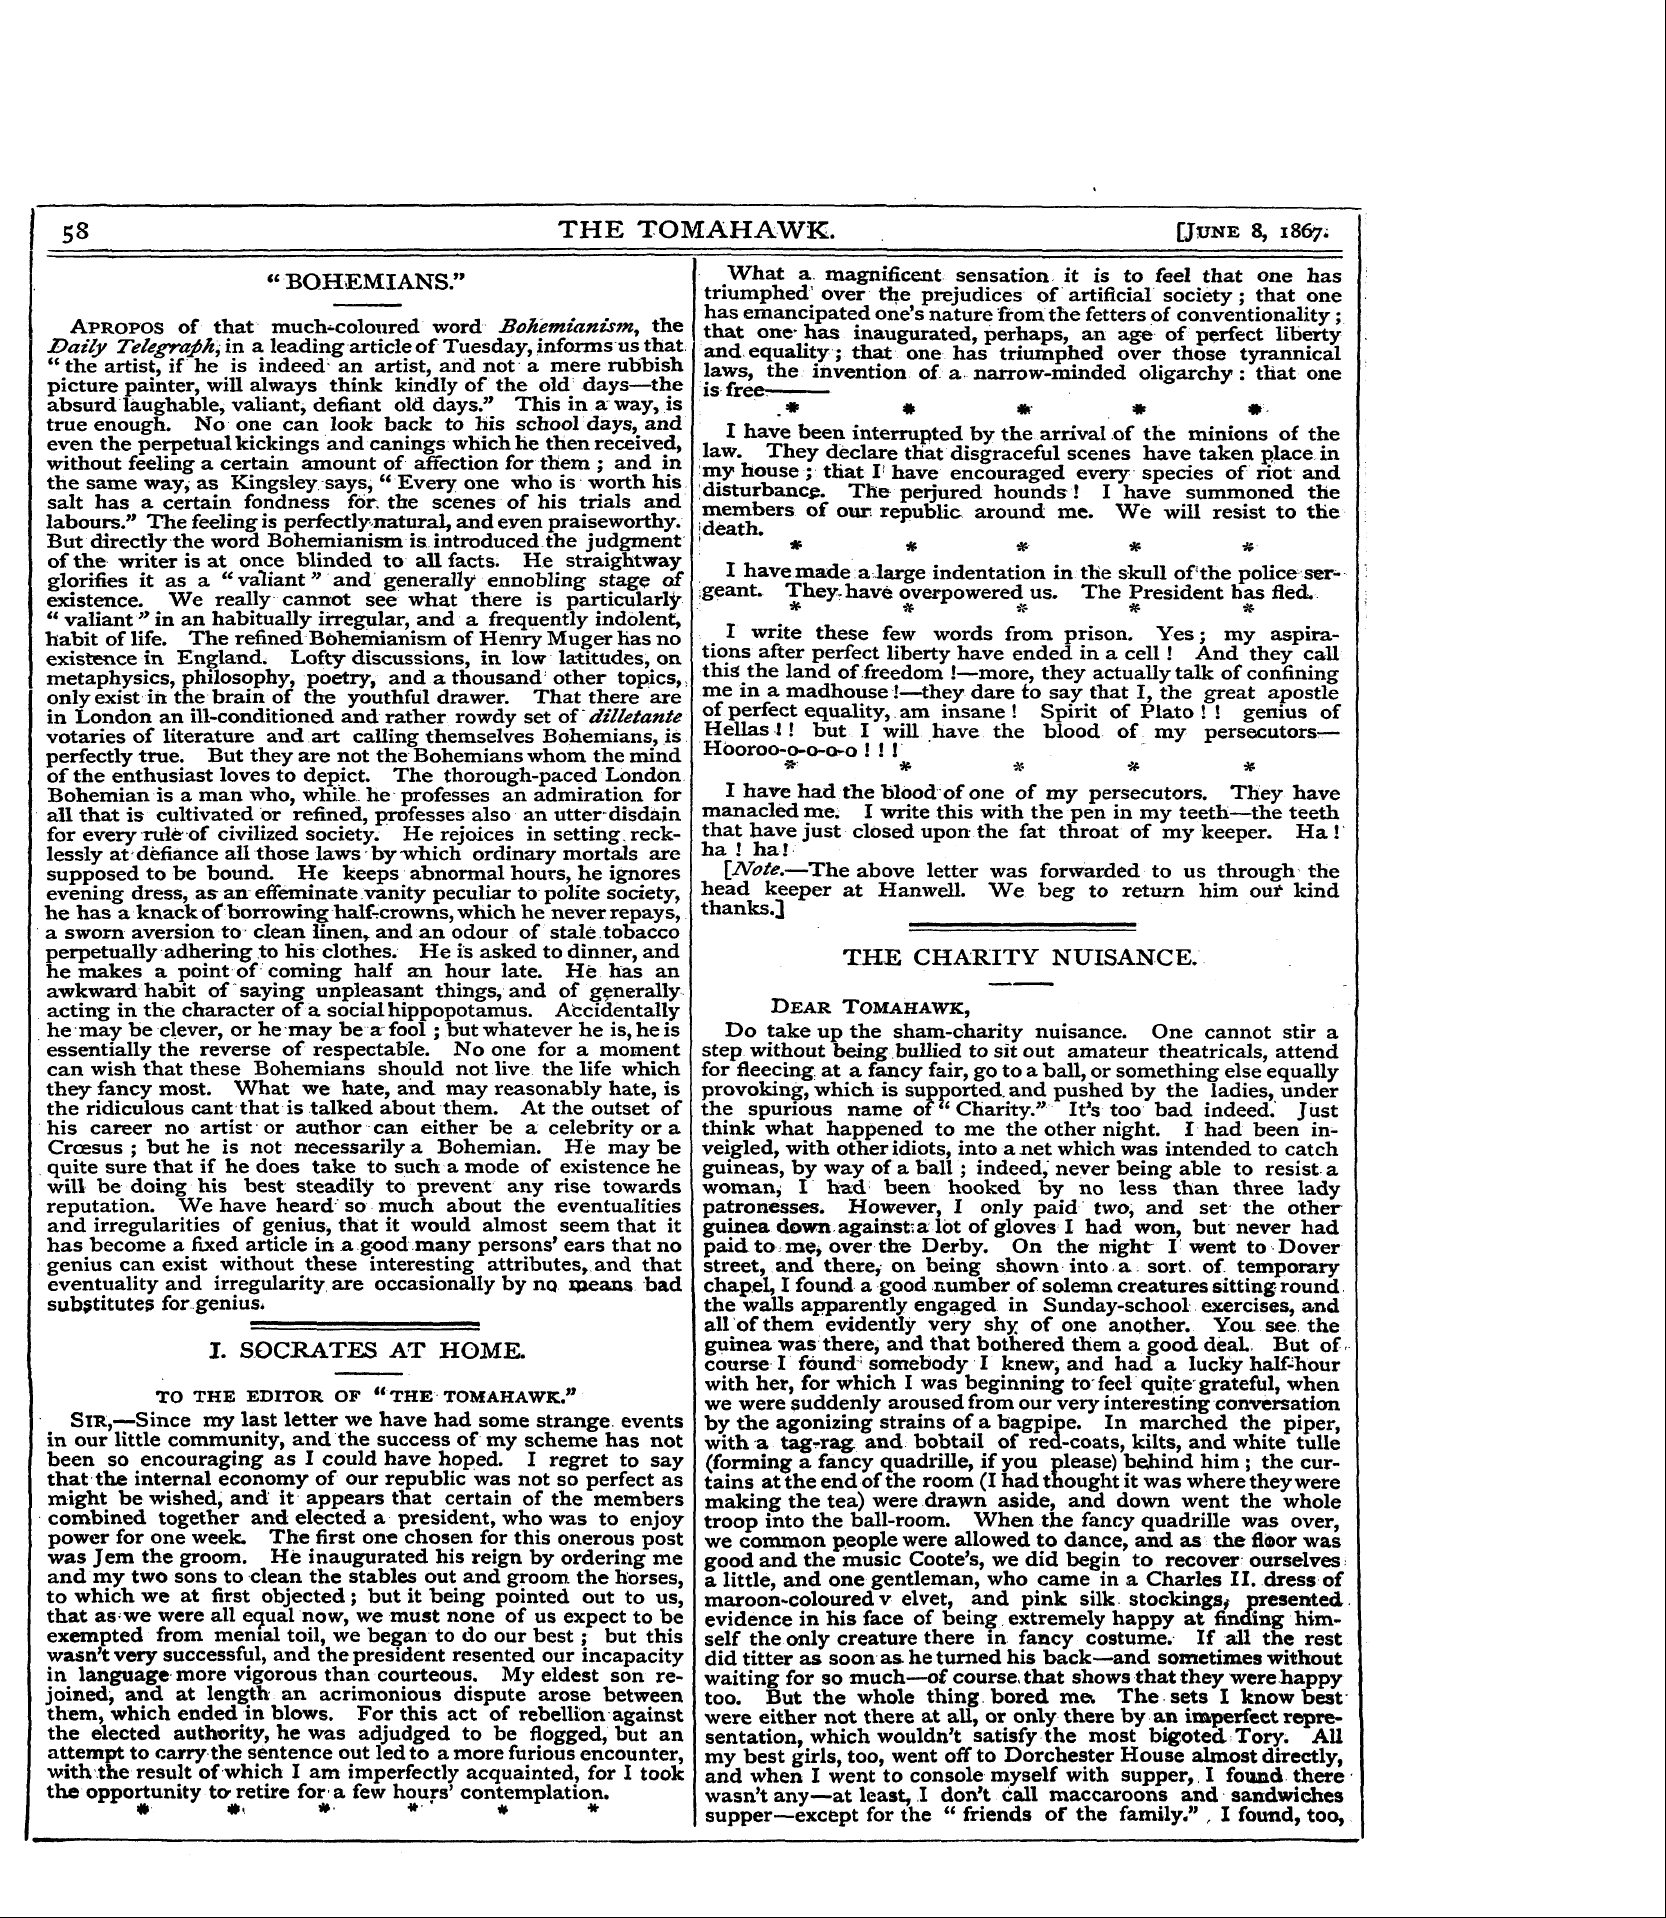 Tomahawk (1867-1870): jS F Y, 1st edition - "Bohemians."